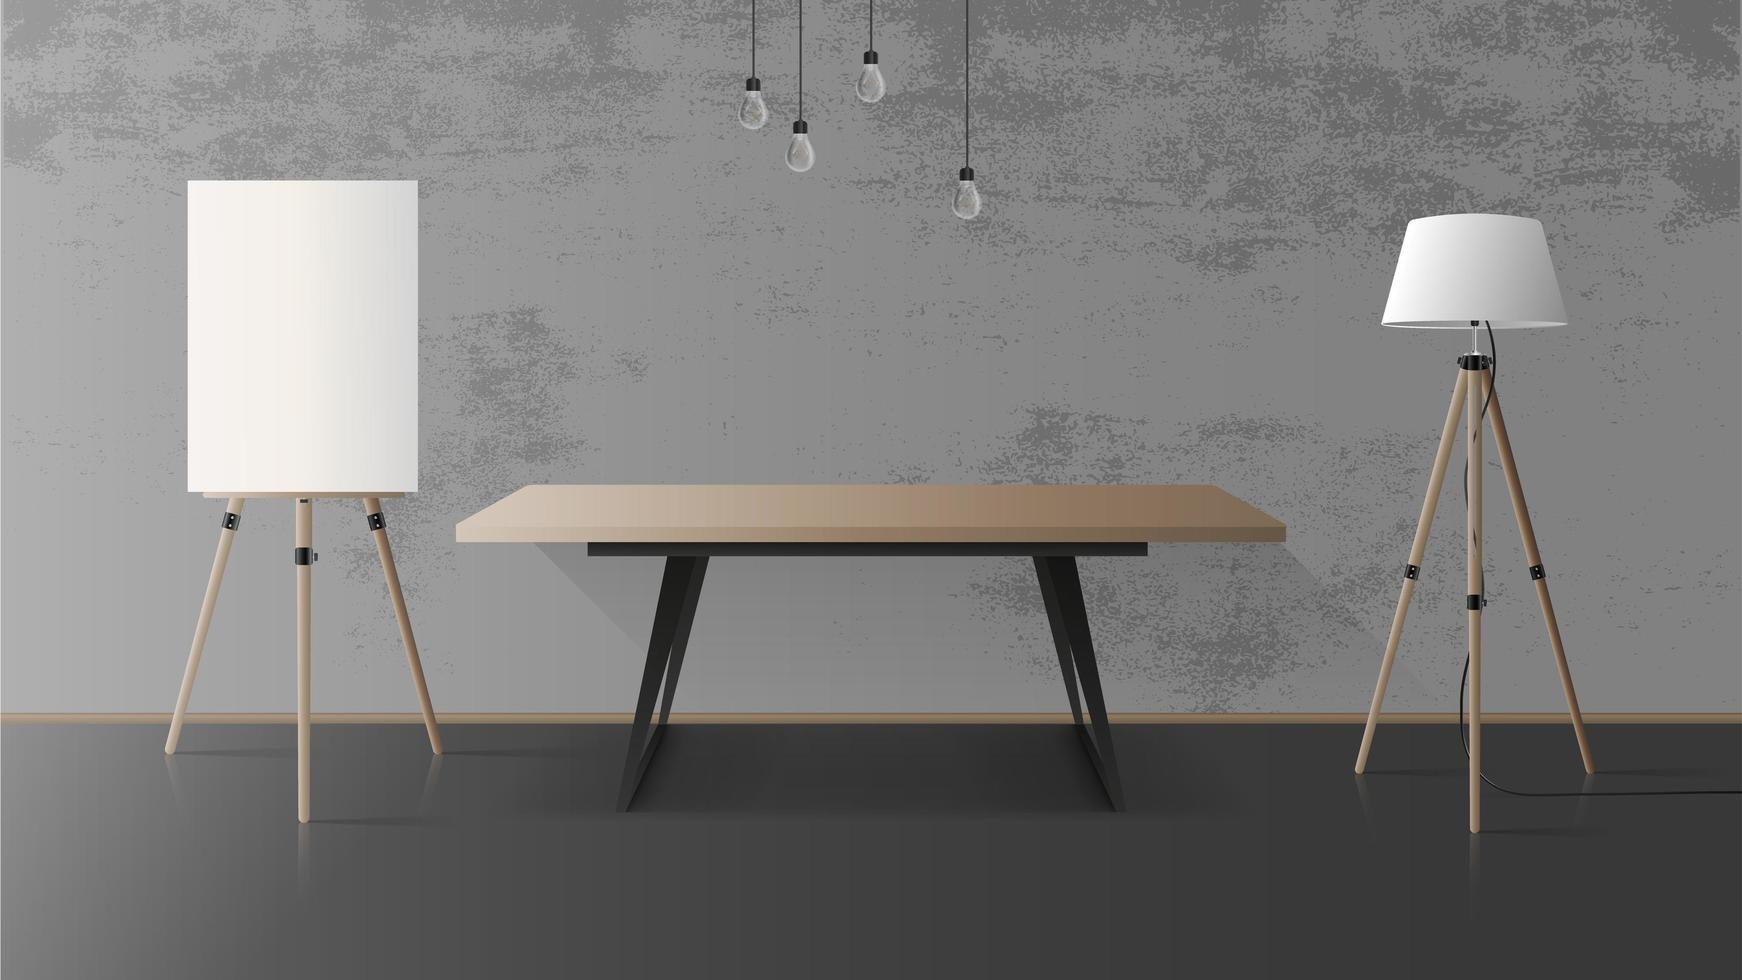 Holztisch mit schwarzem Metallgestell. leerer Tisch, hölzerne Staffelei, Stehlampe, grau, Betonwand. Vektor-Illustration vektor